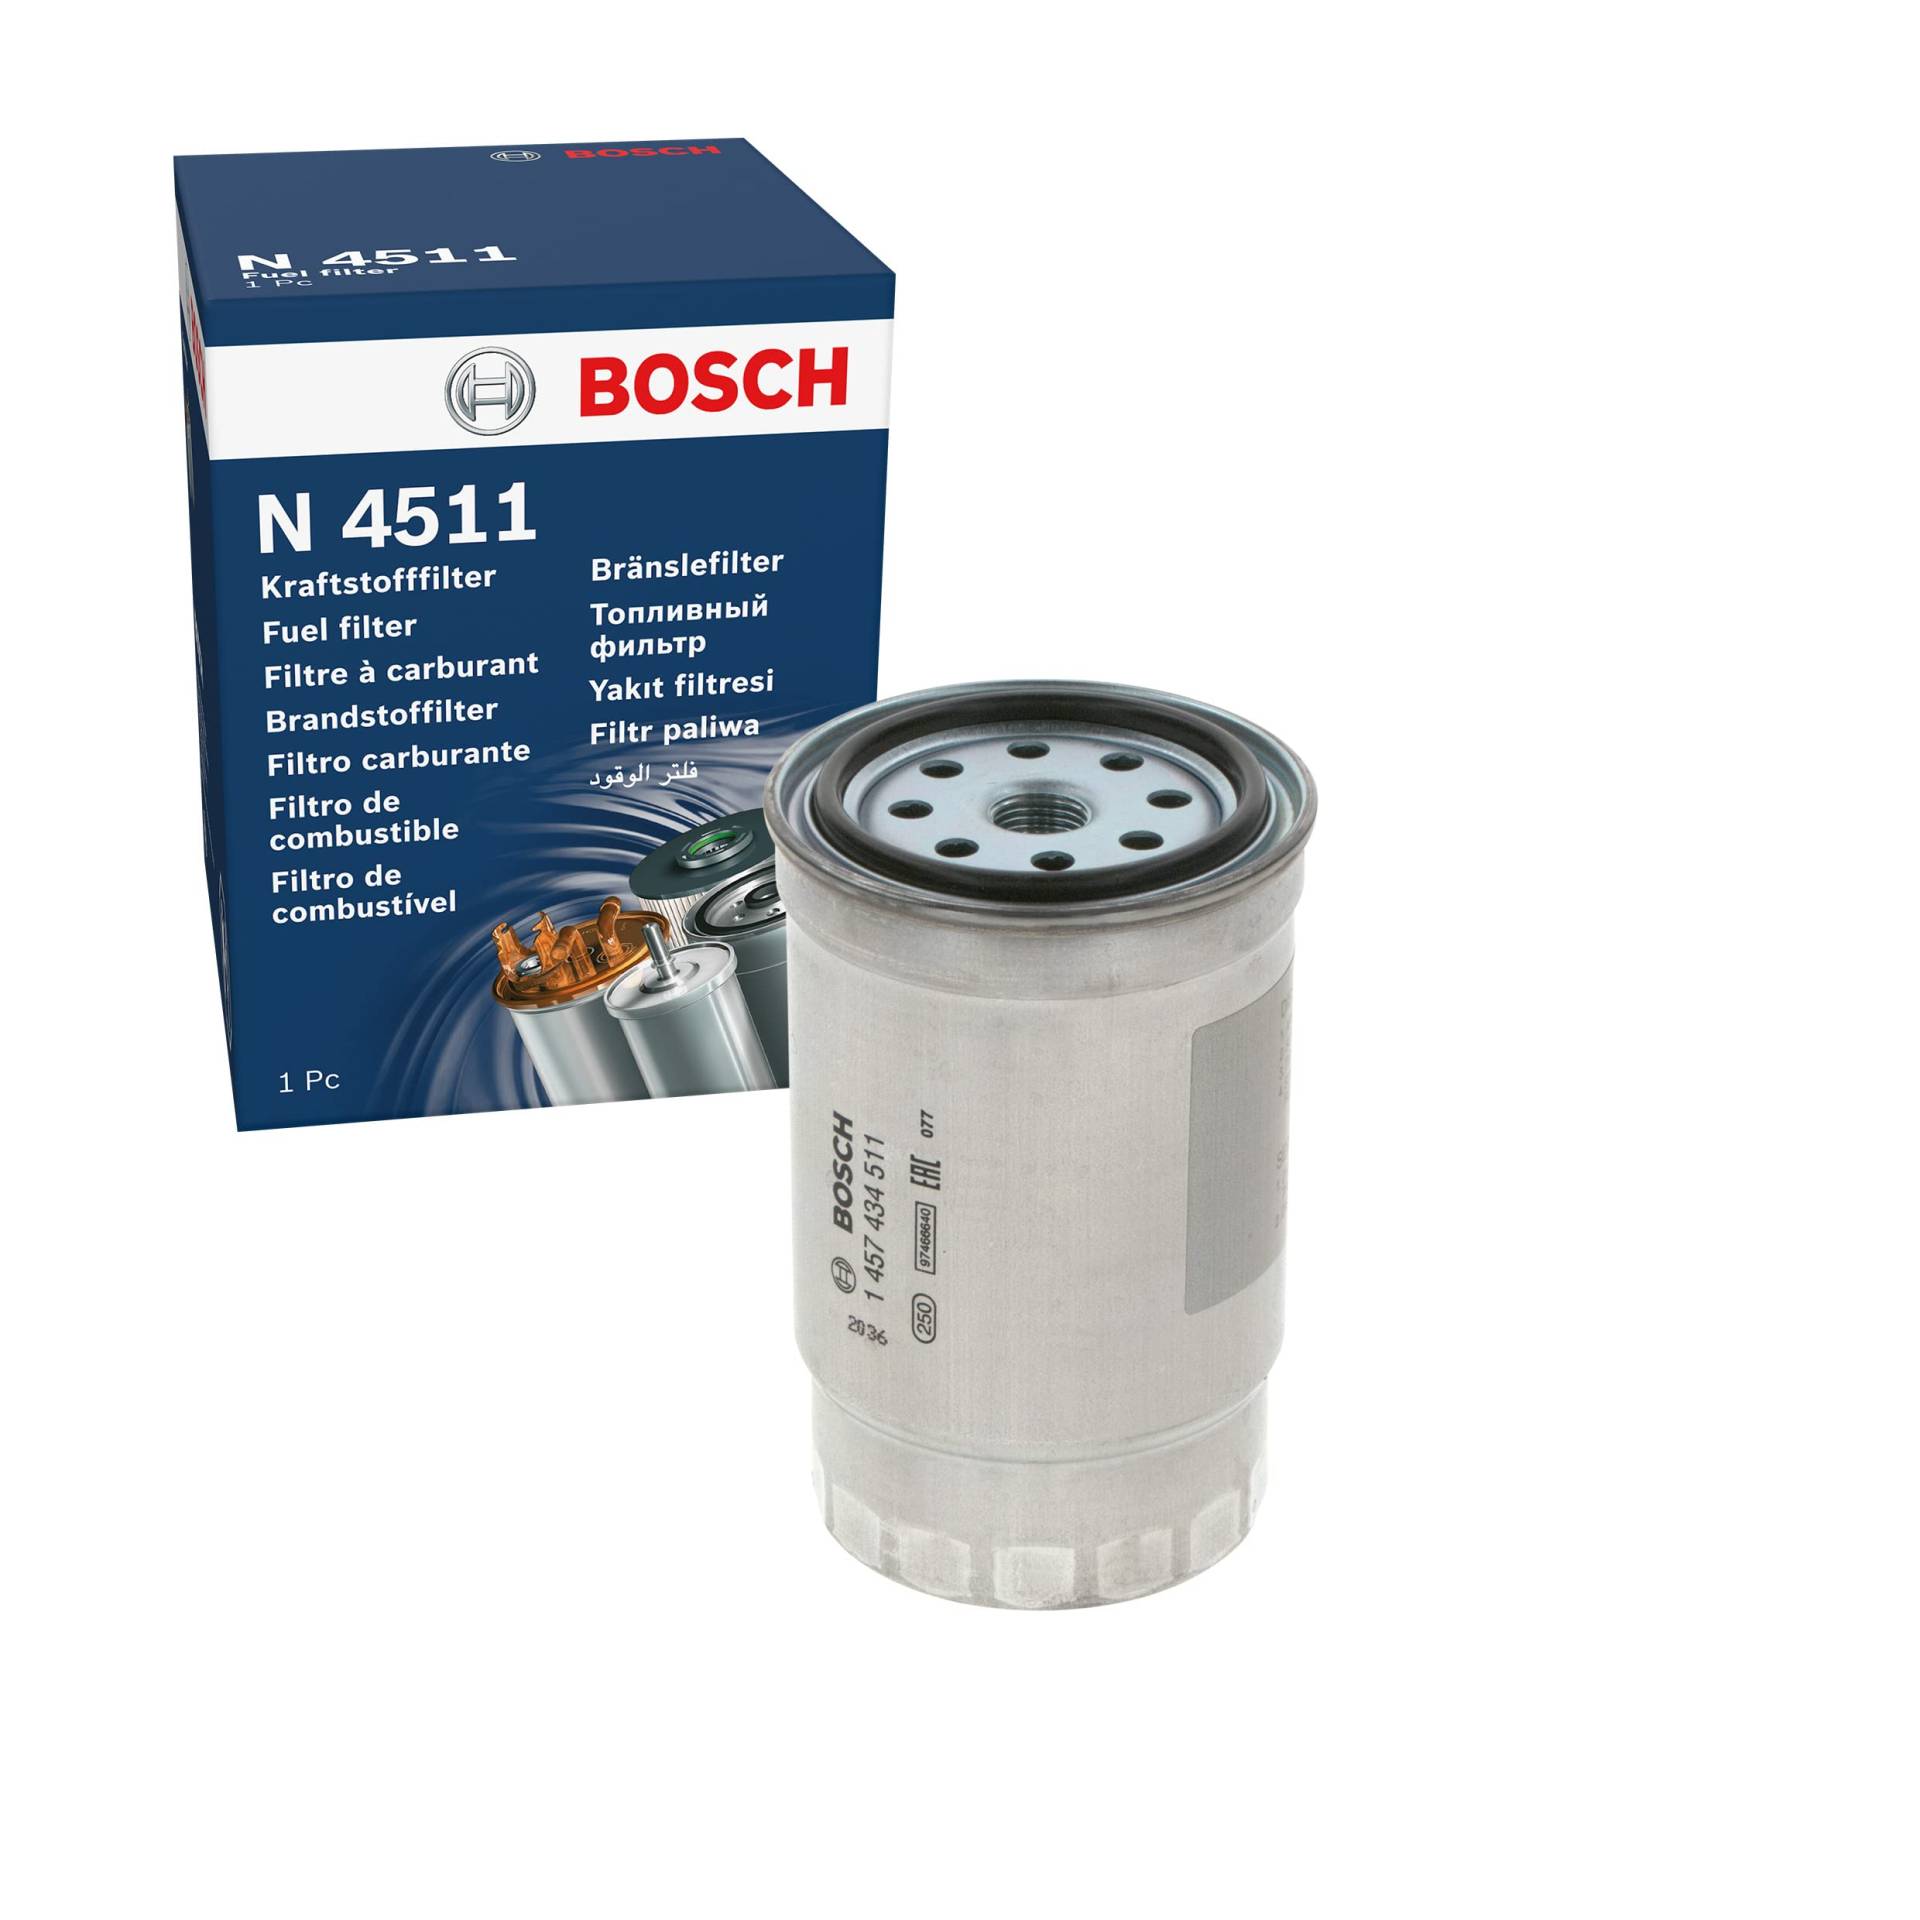 Bosch N4511 - Dieselfilter Auto von Bosch Automotive